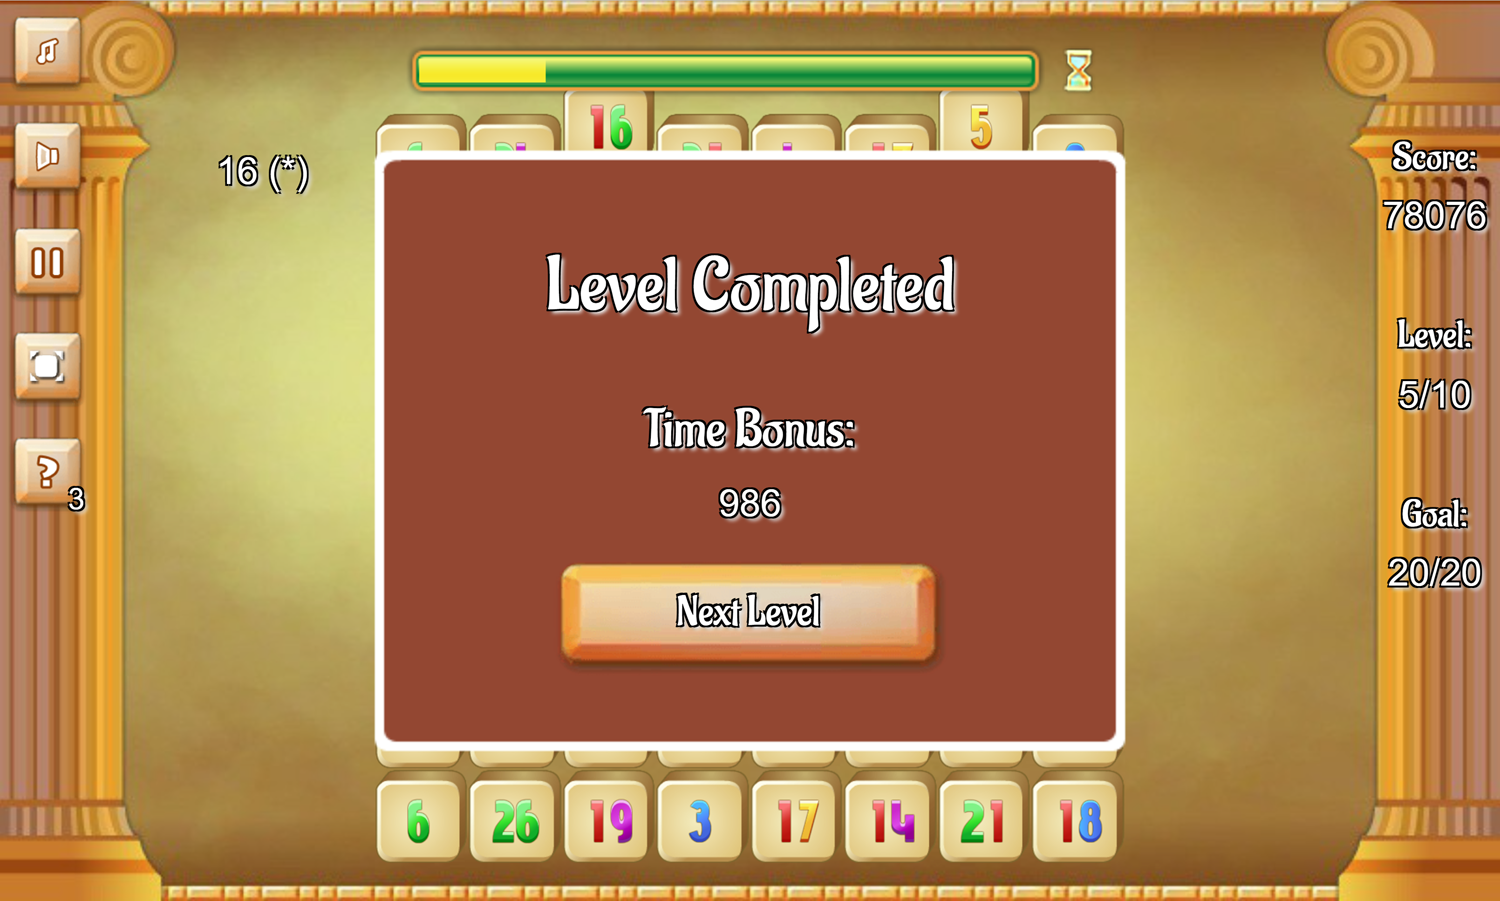 Jolly Jong Math Game Level Completed Screen Screenshot.